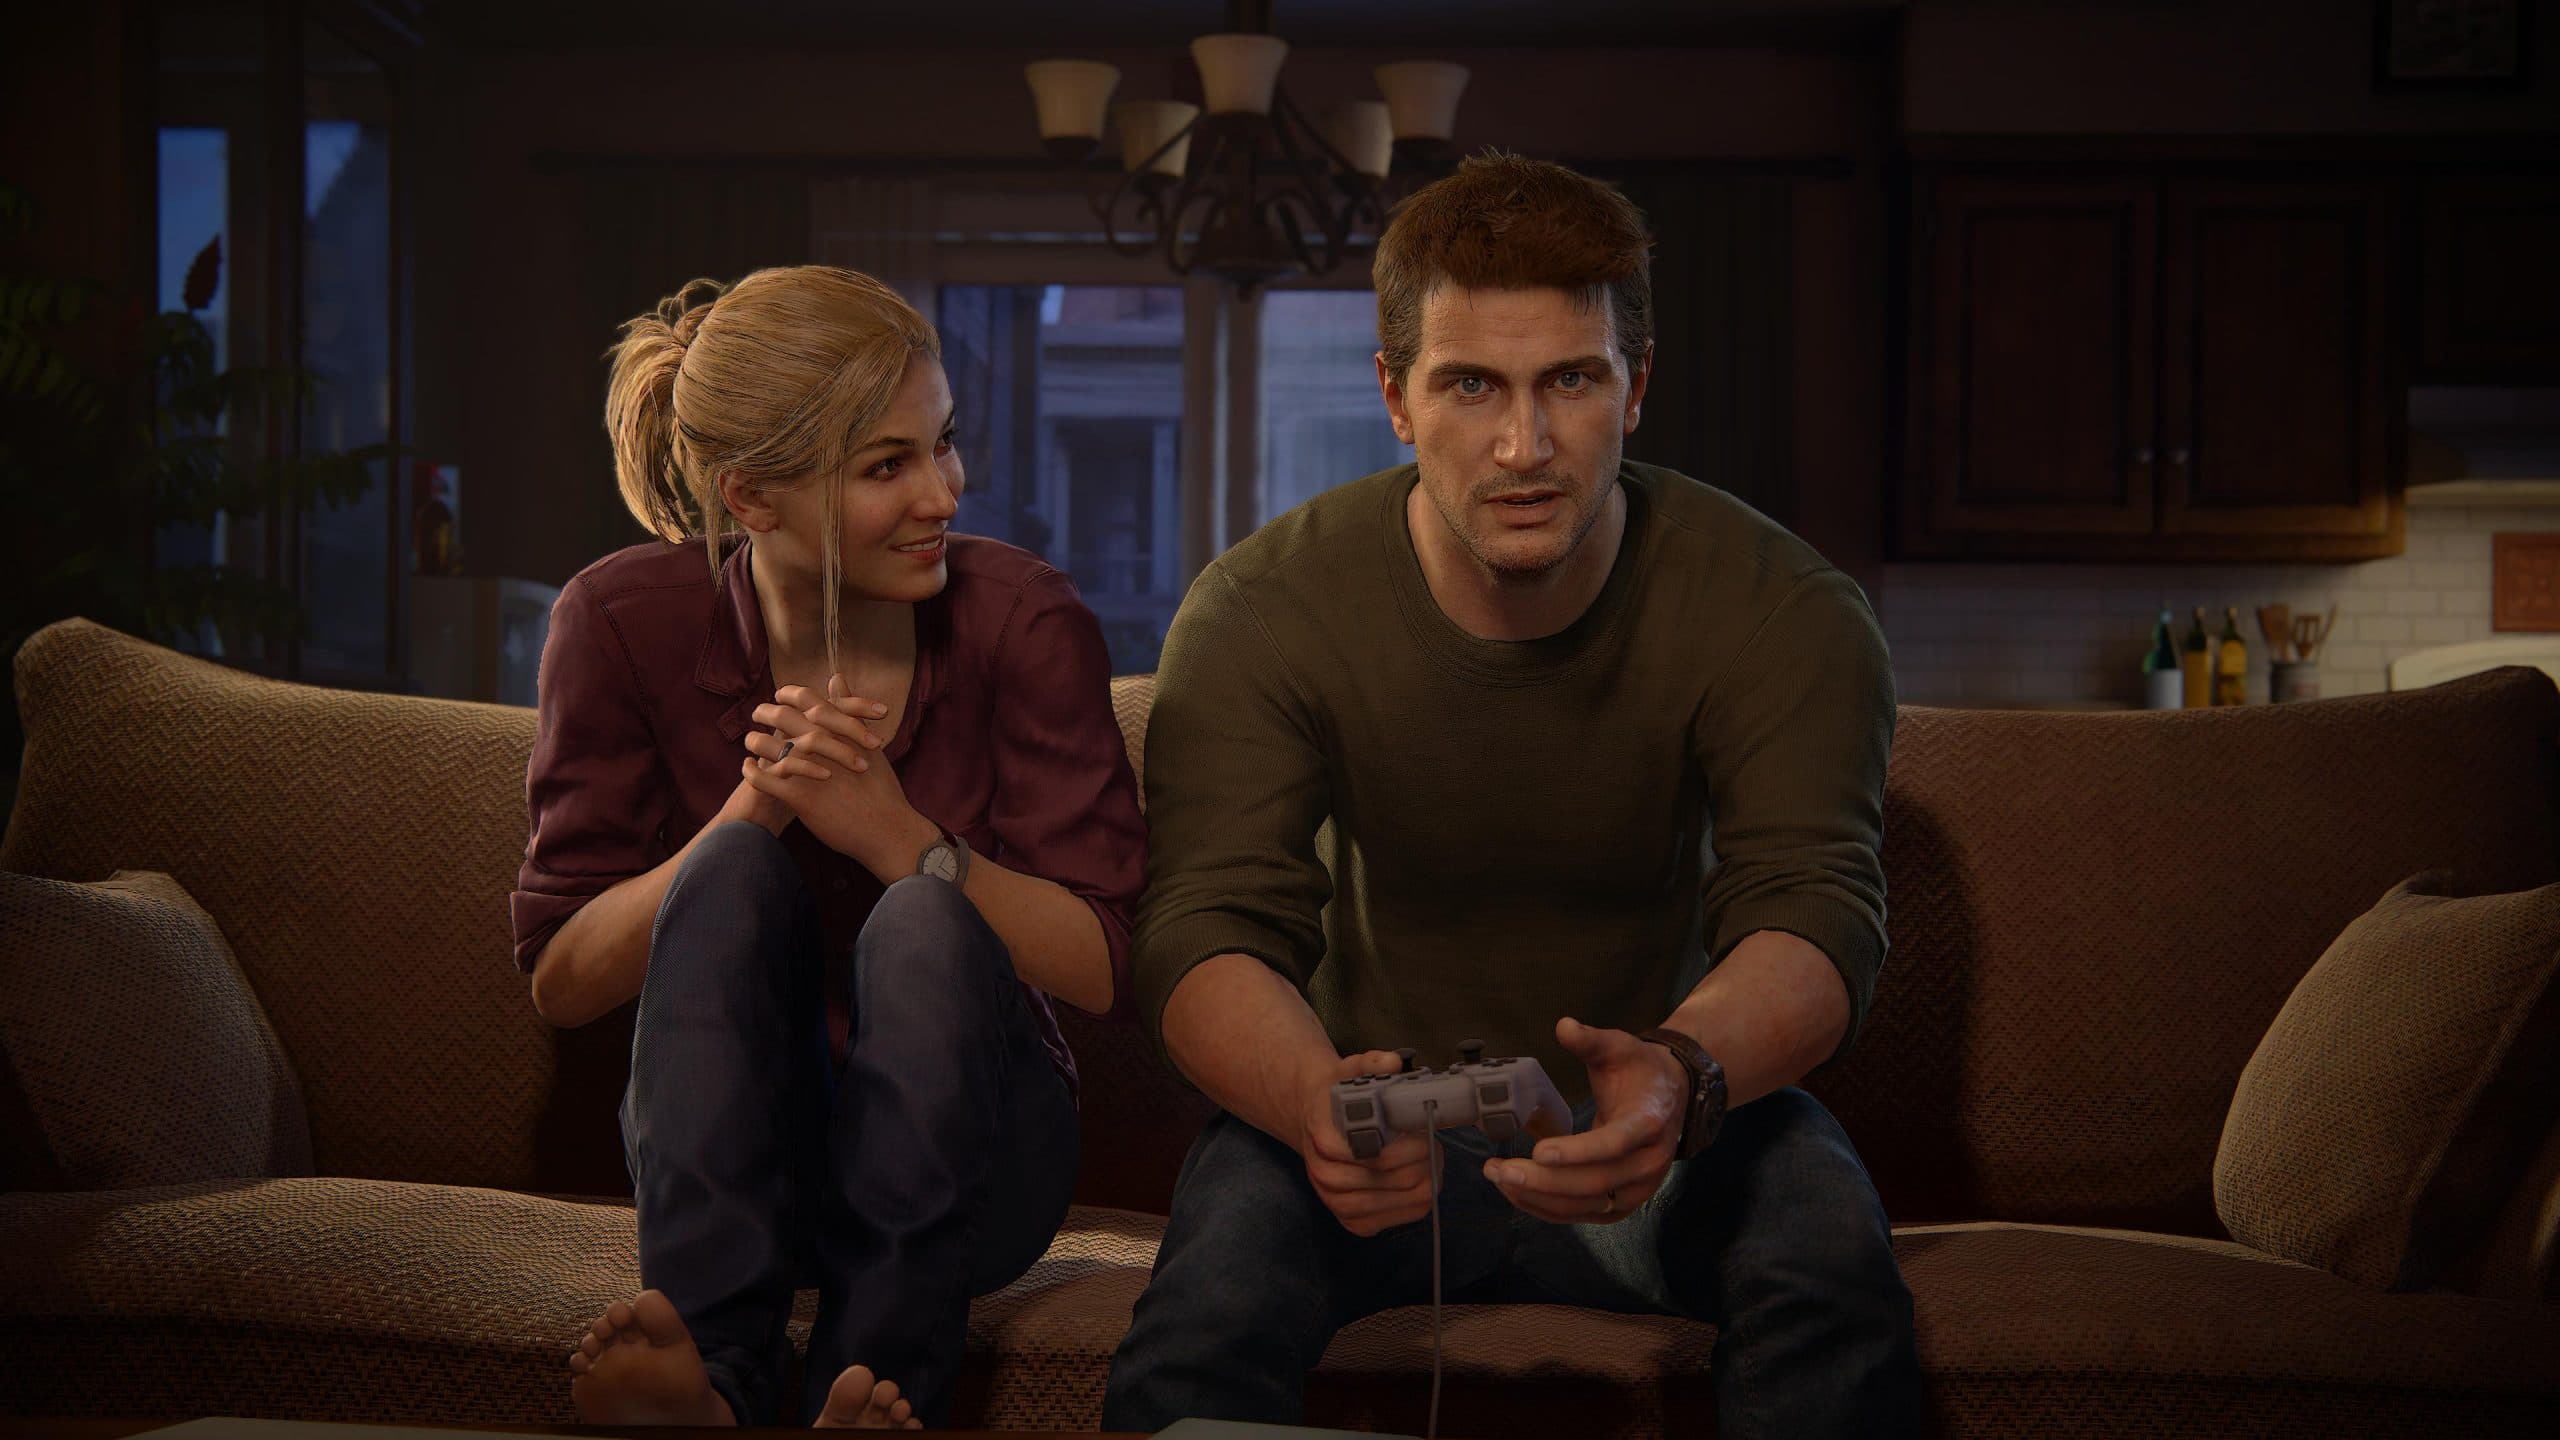 PS Store dará ingresso para o filme de Uncharted para quem comprar a  coleção Legado dos Ladrões